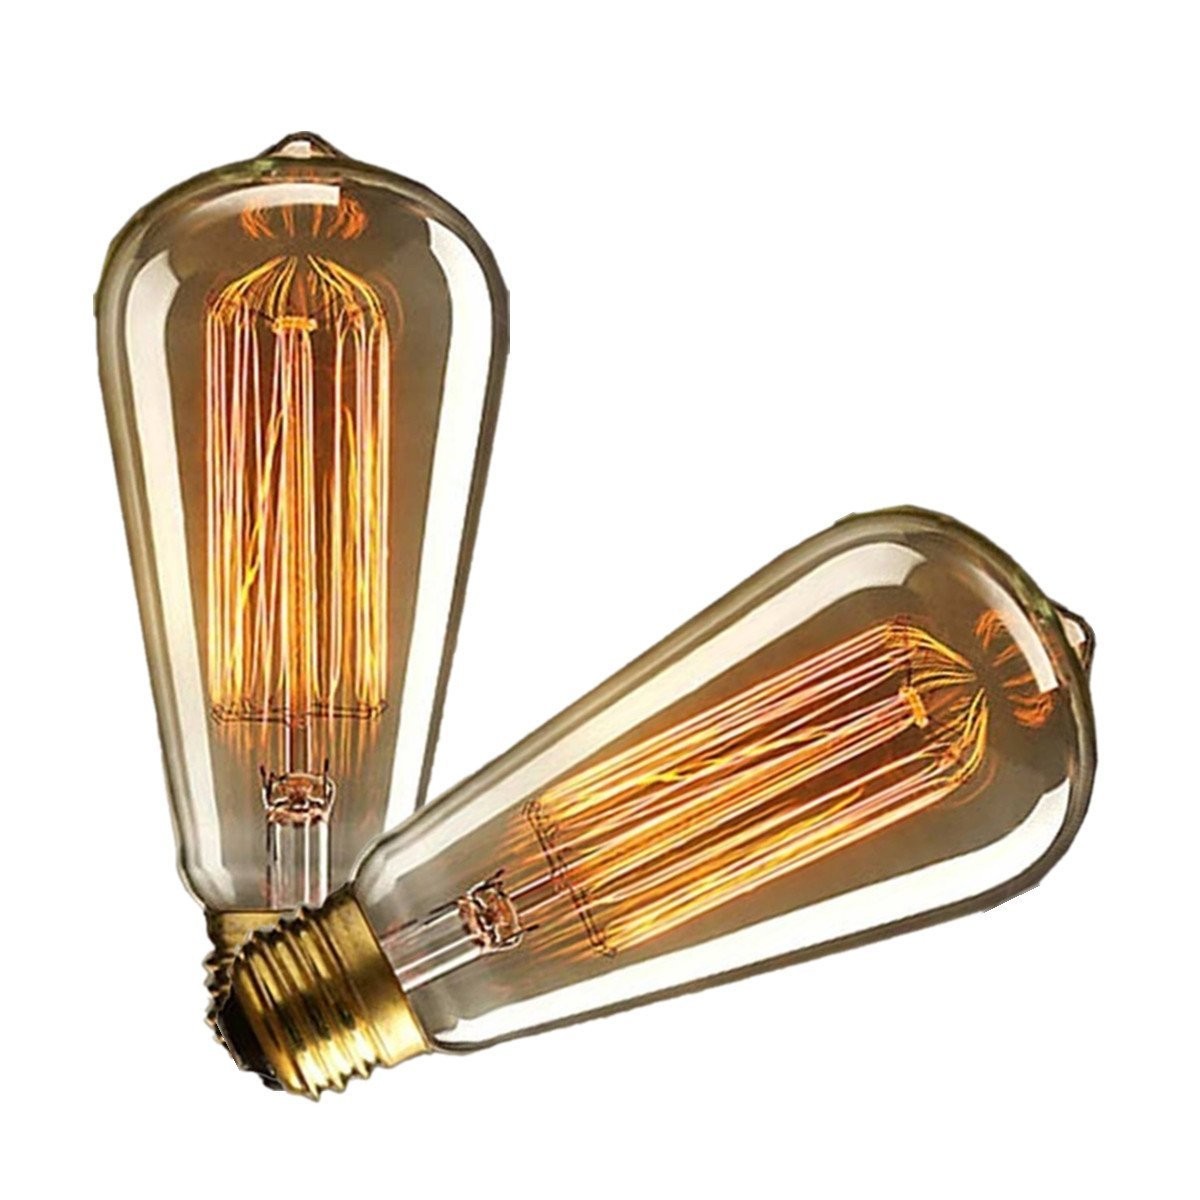 Kingso-2Pcs-110v-60w-Edison-Retro-Series-Tungsten-Lamp-Straight-Wire-1890774-2